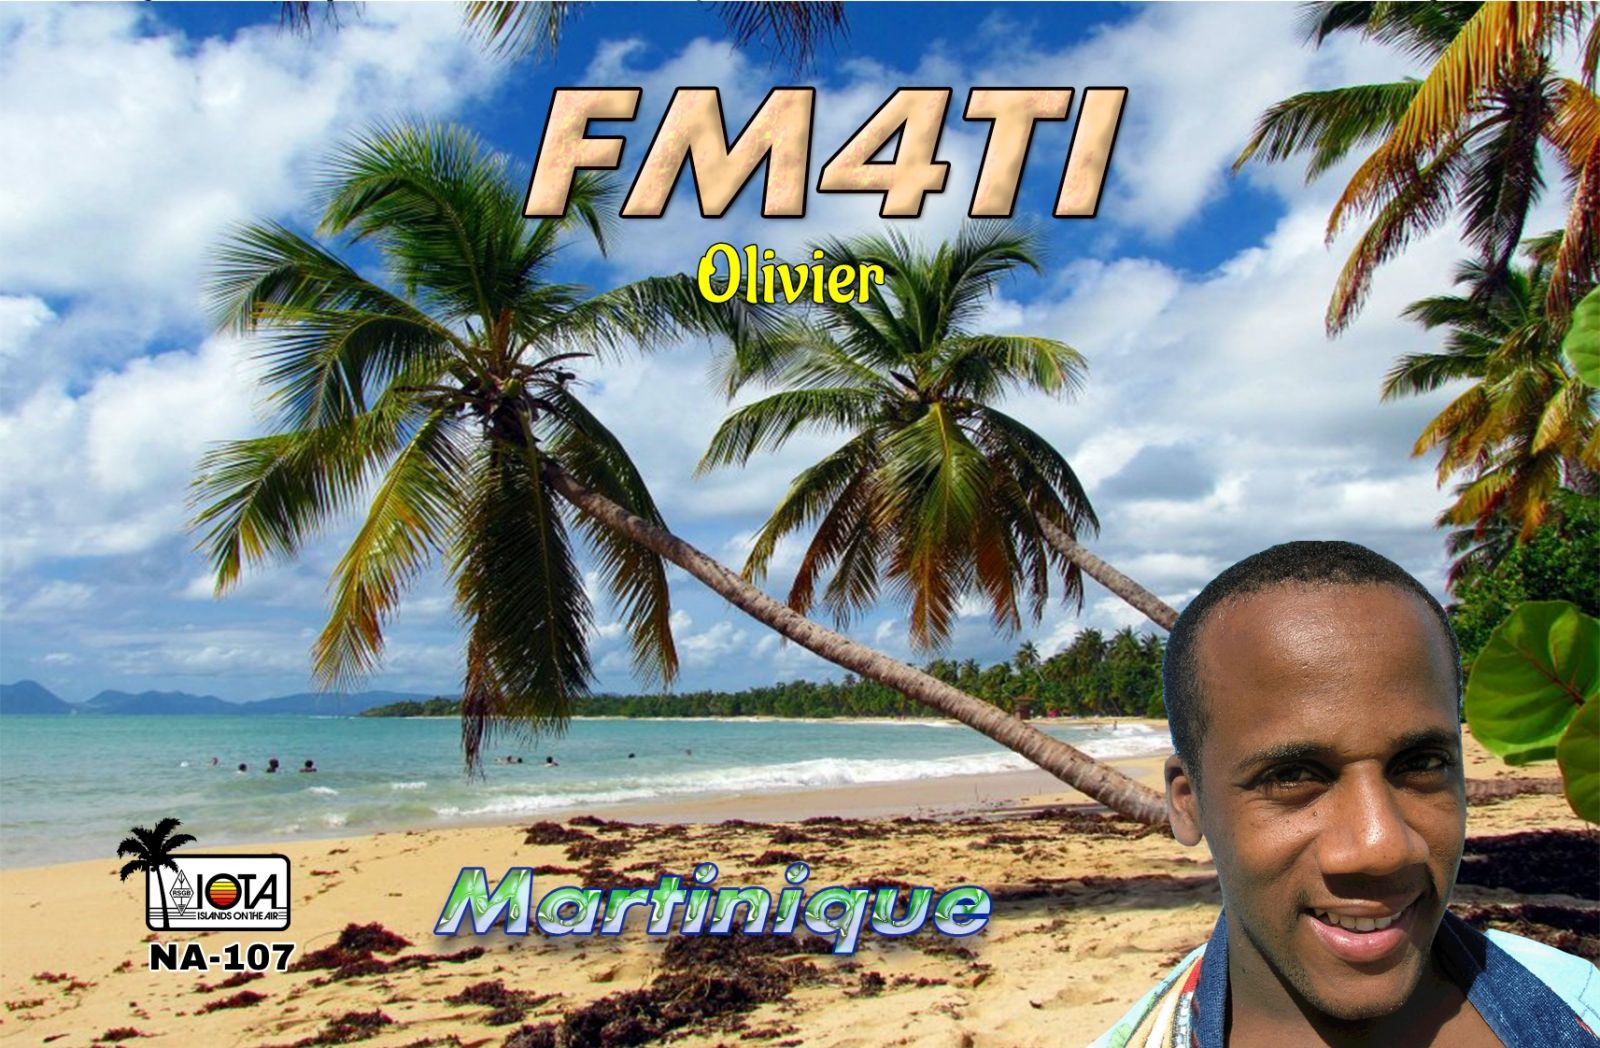 FM4TI Martinique Island QSL Card